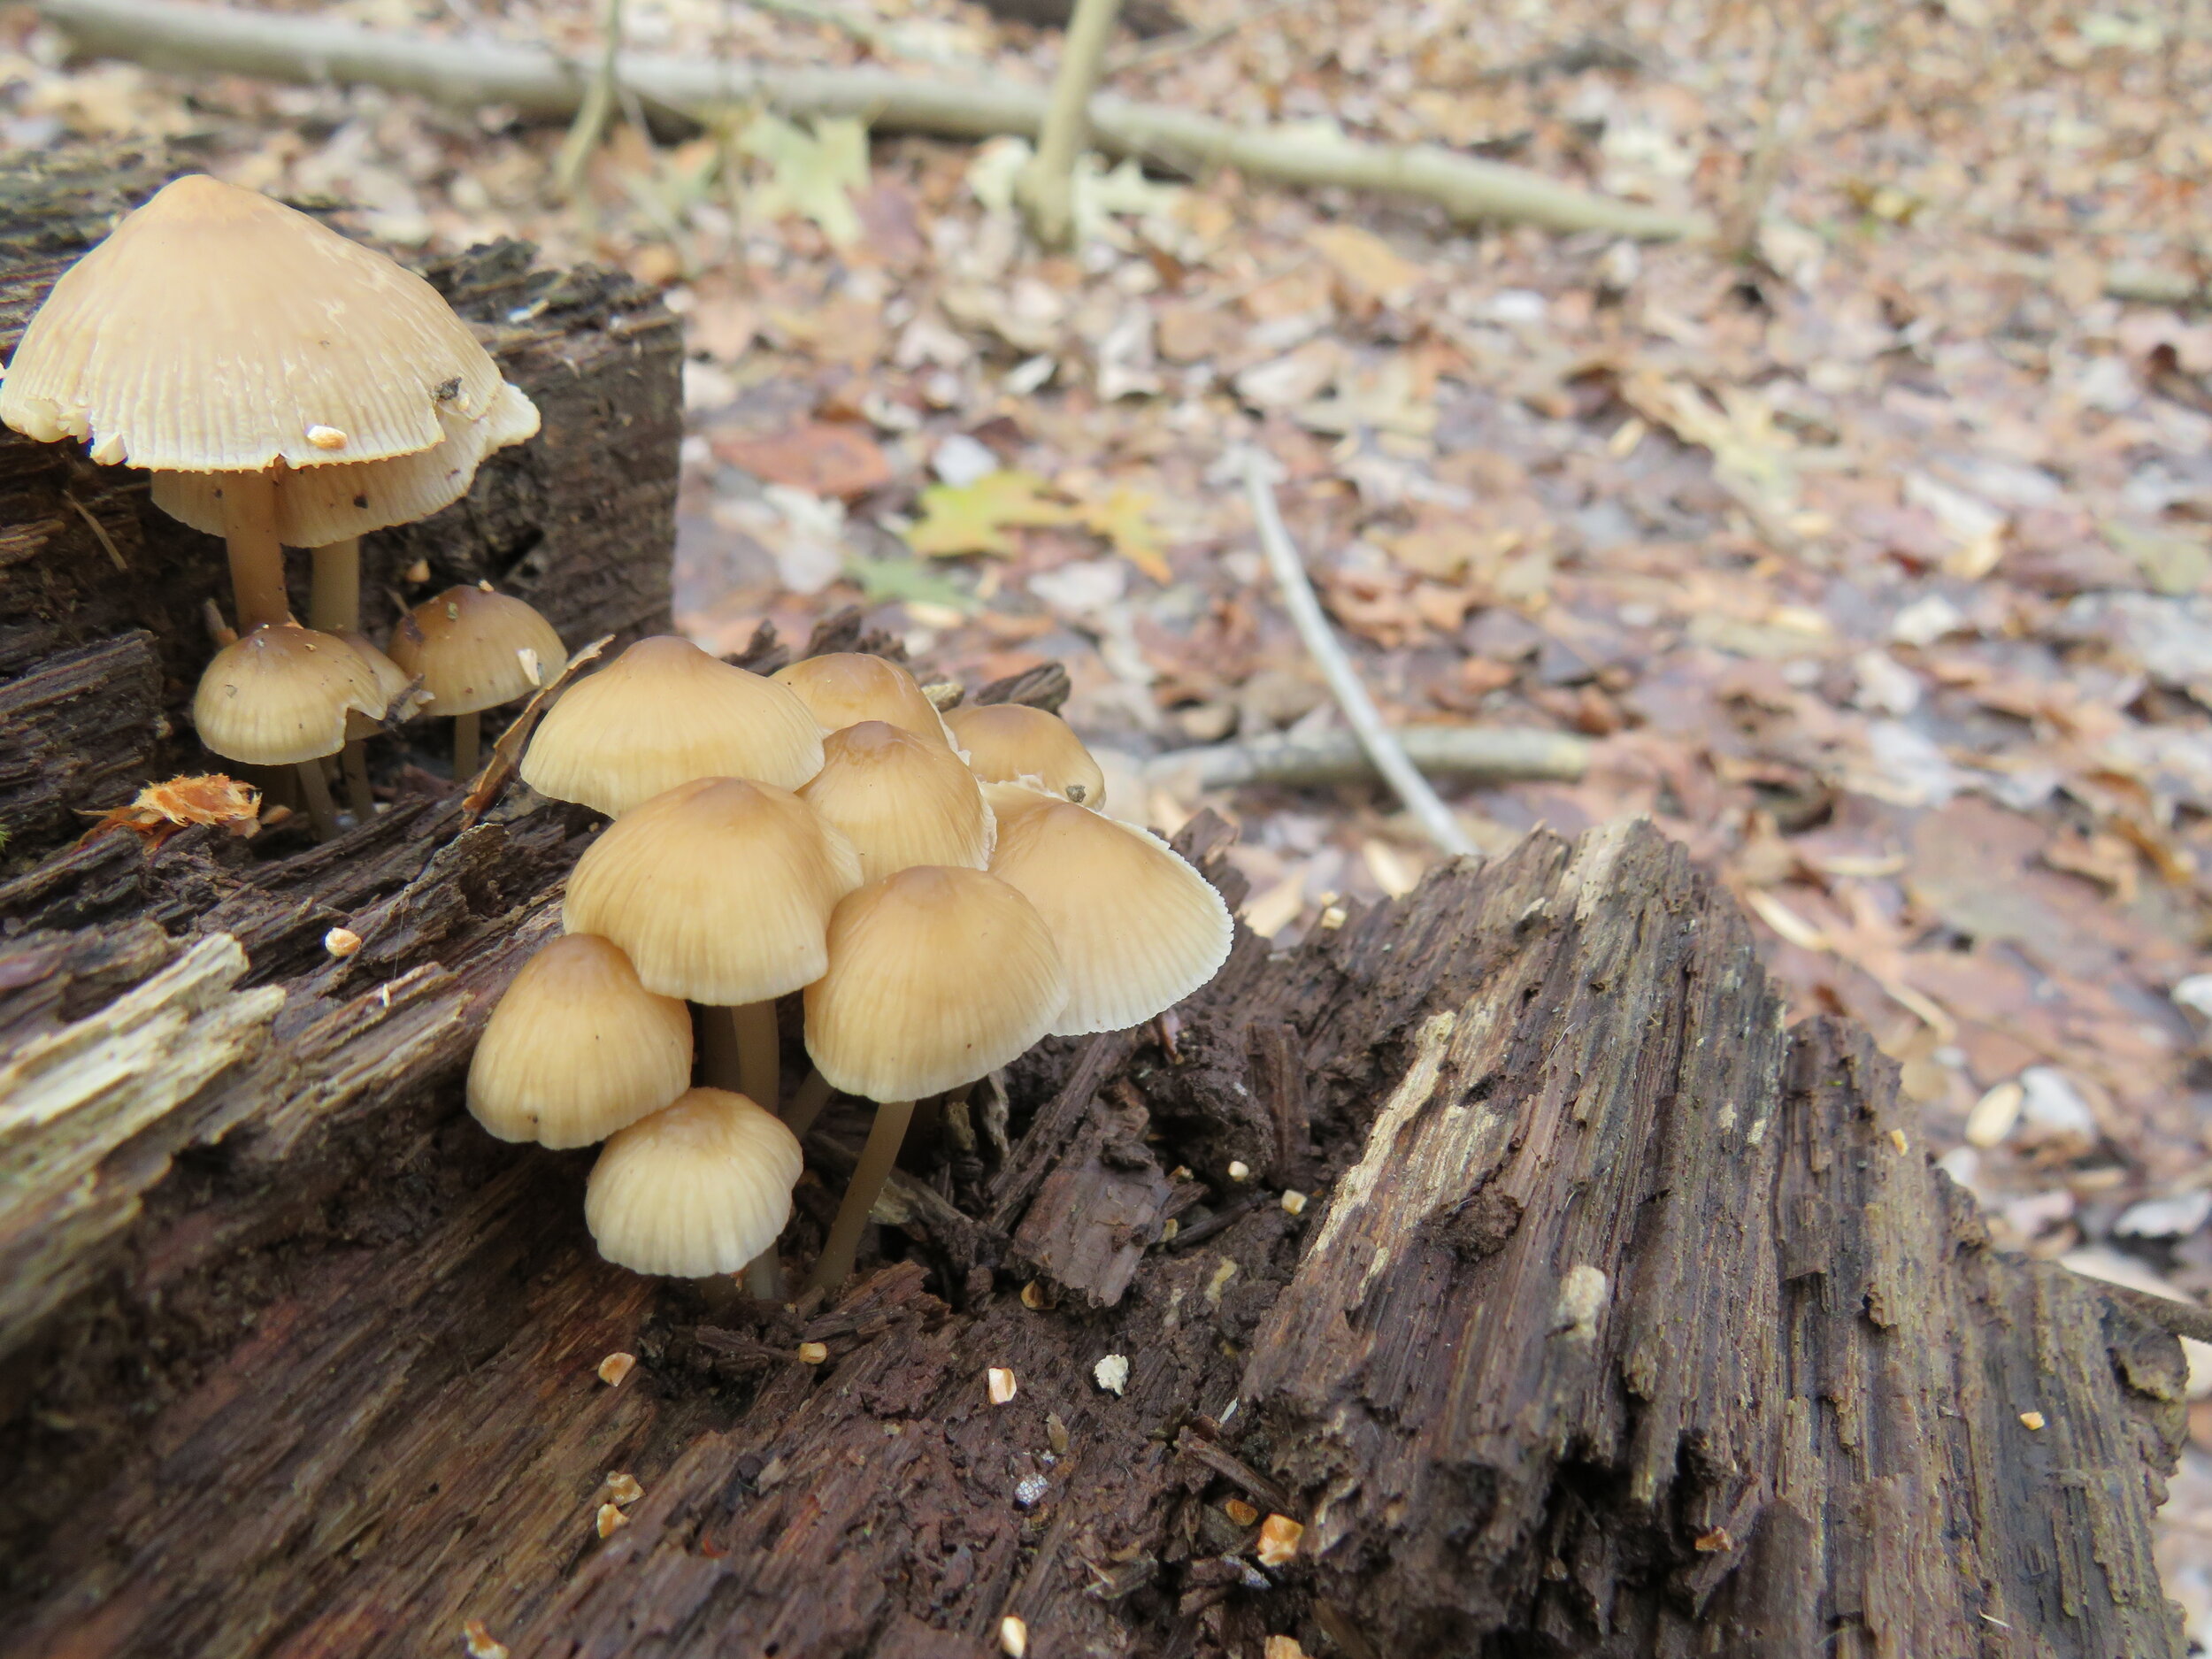  A family of tiny mushrooms. 